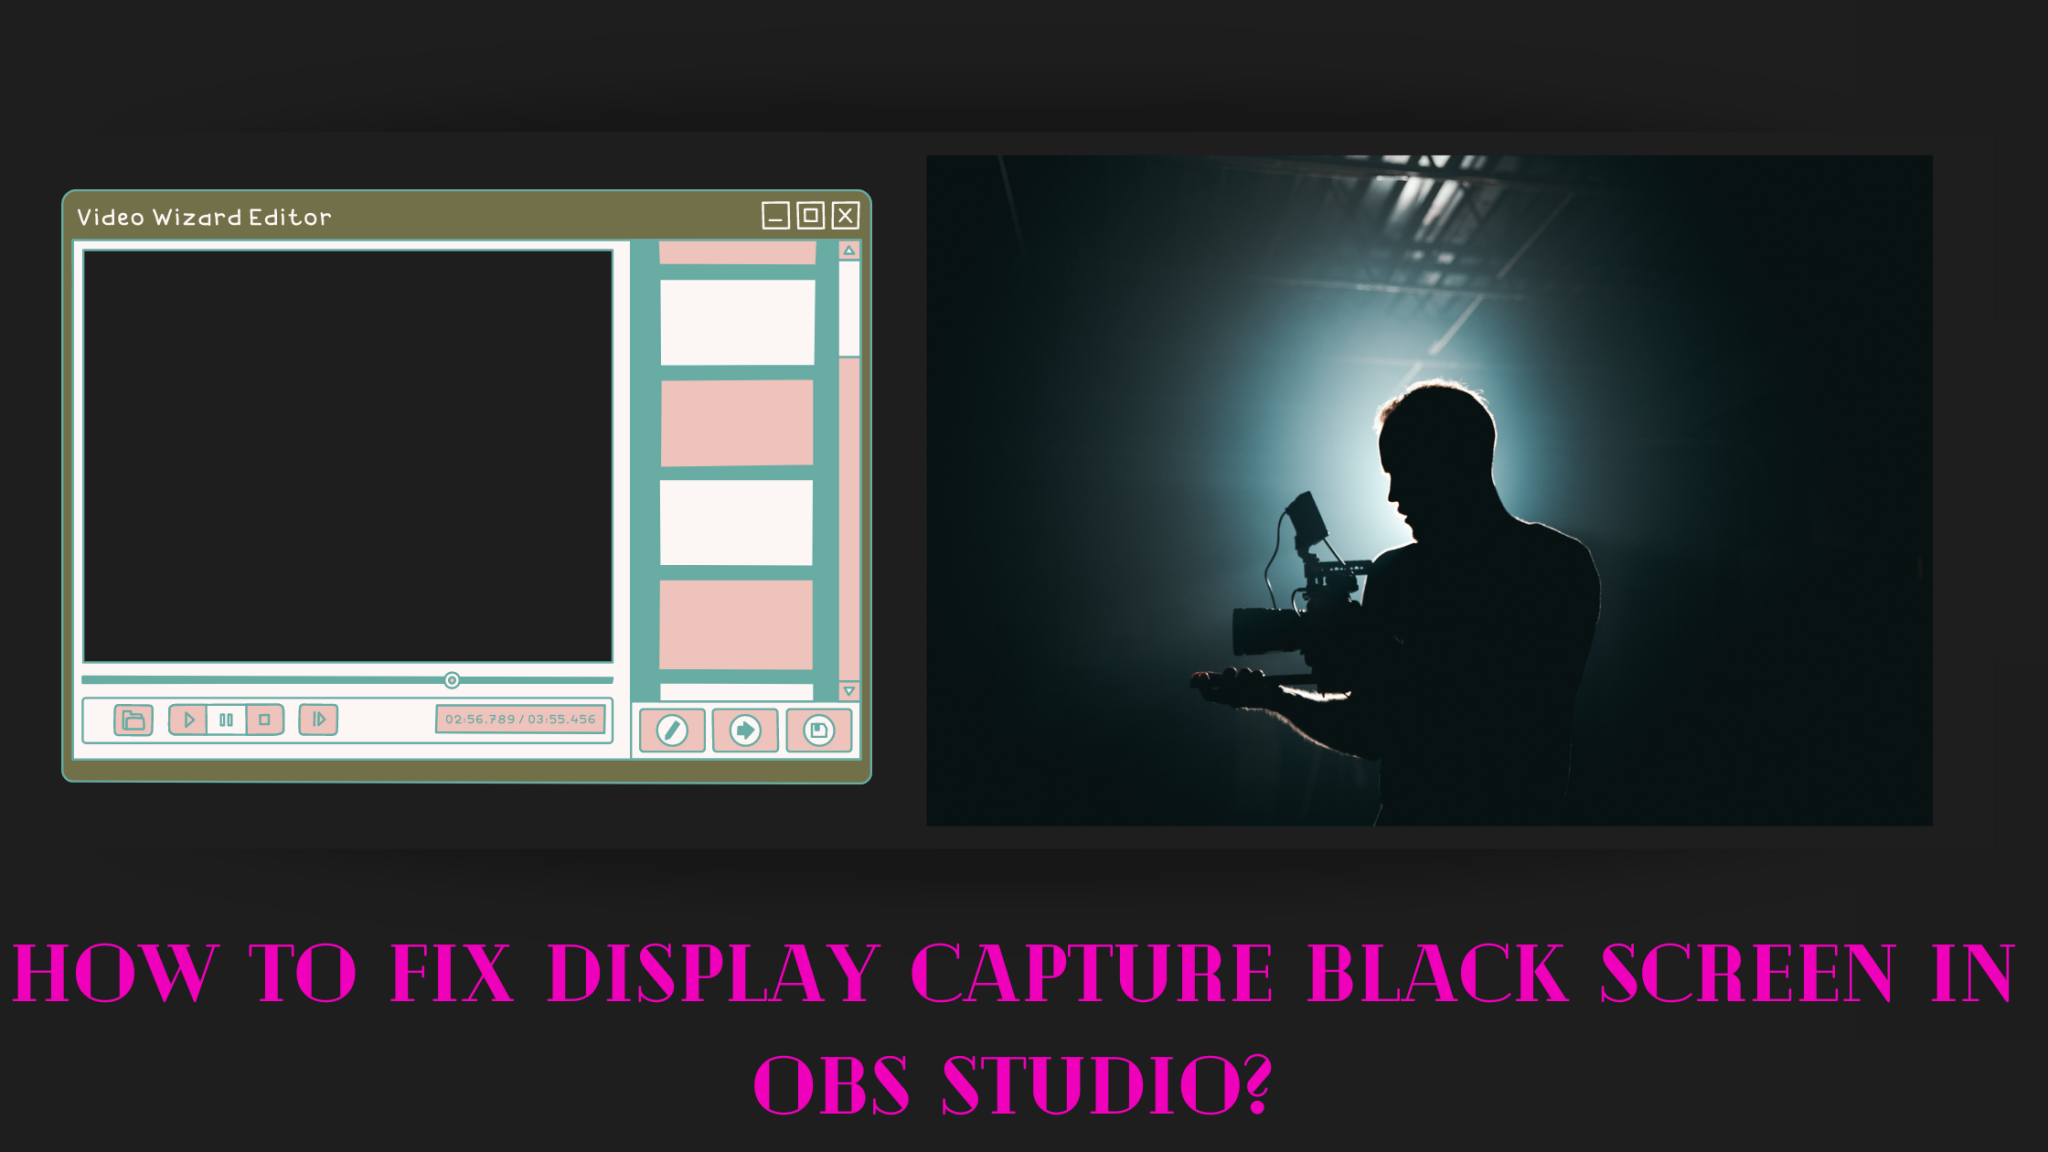 obs studio black screen game capture fix